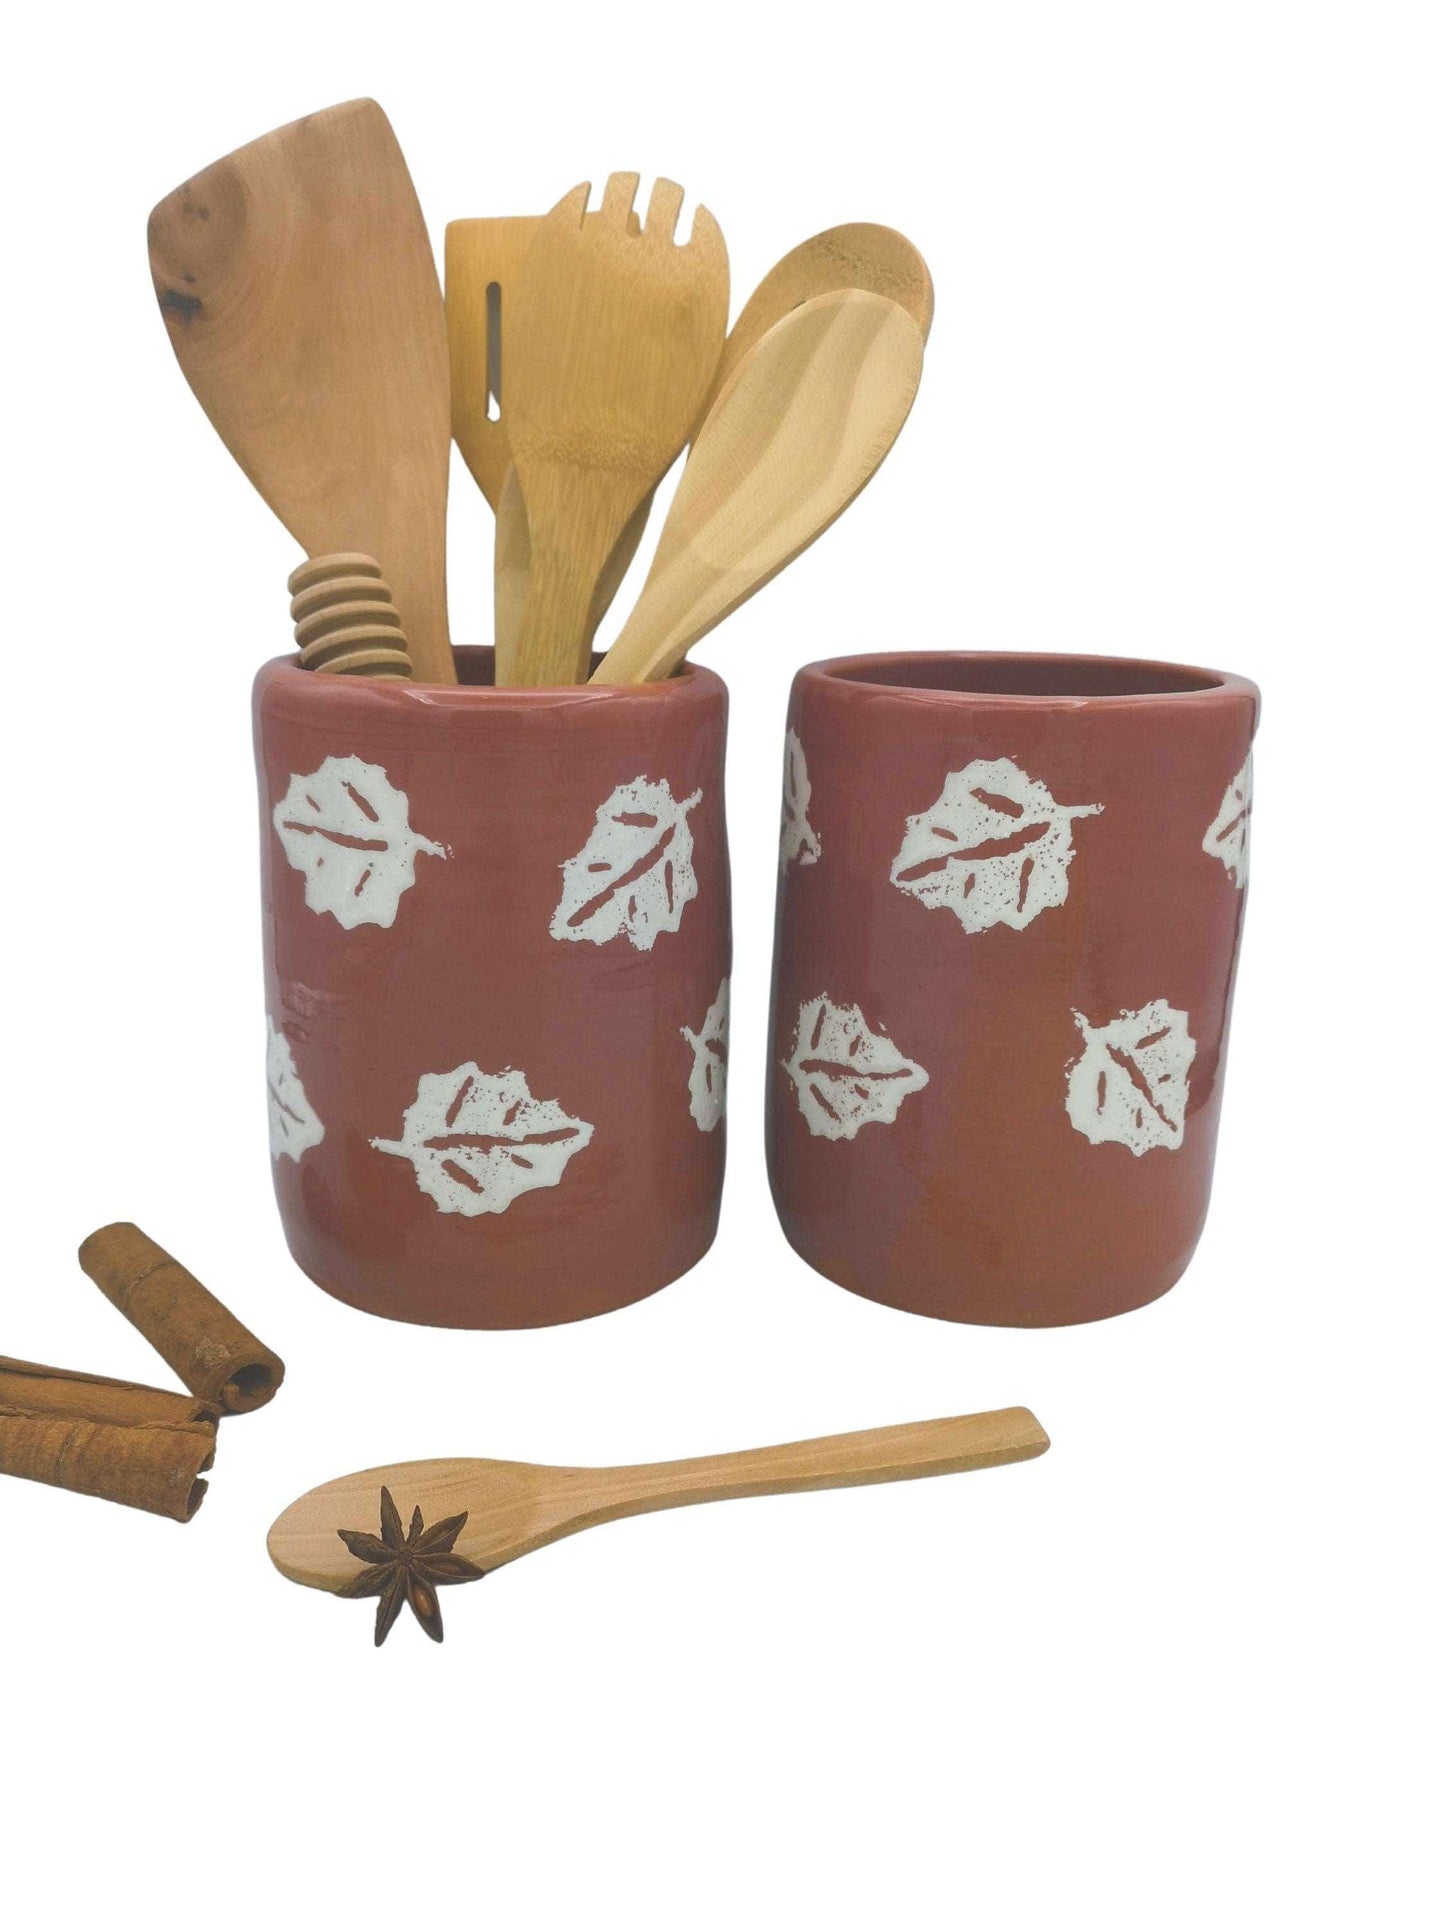 1Pc Handmade Ceramic Terracotta Vase Large Utensil Holder, Spoon Holder Farmhouse Decor House Warming Gifts New Home Paintbrush Holder Crock